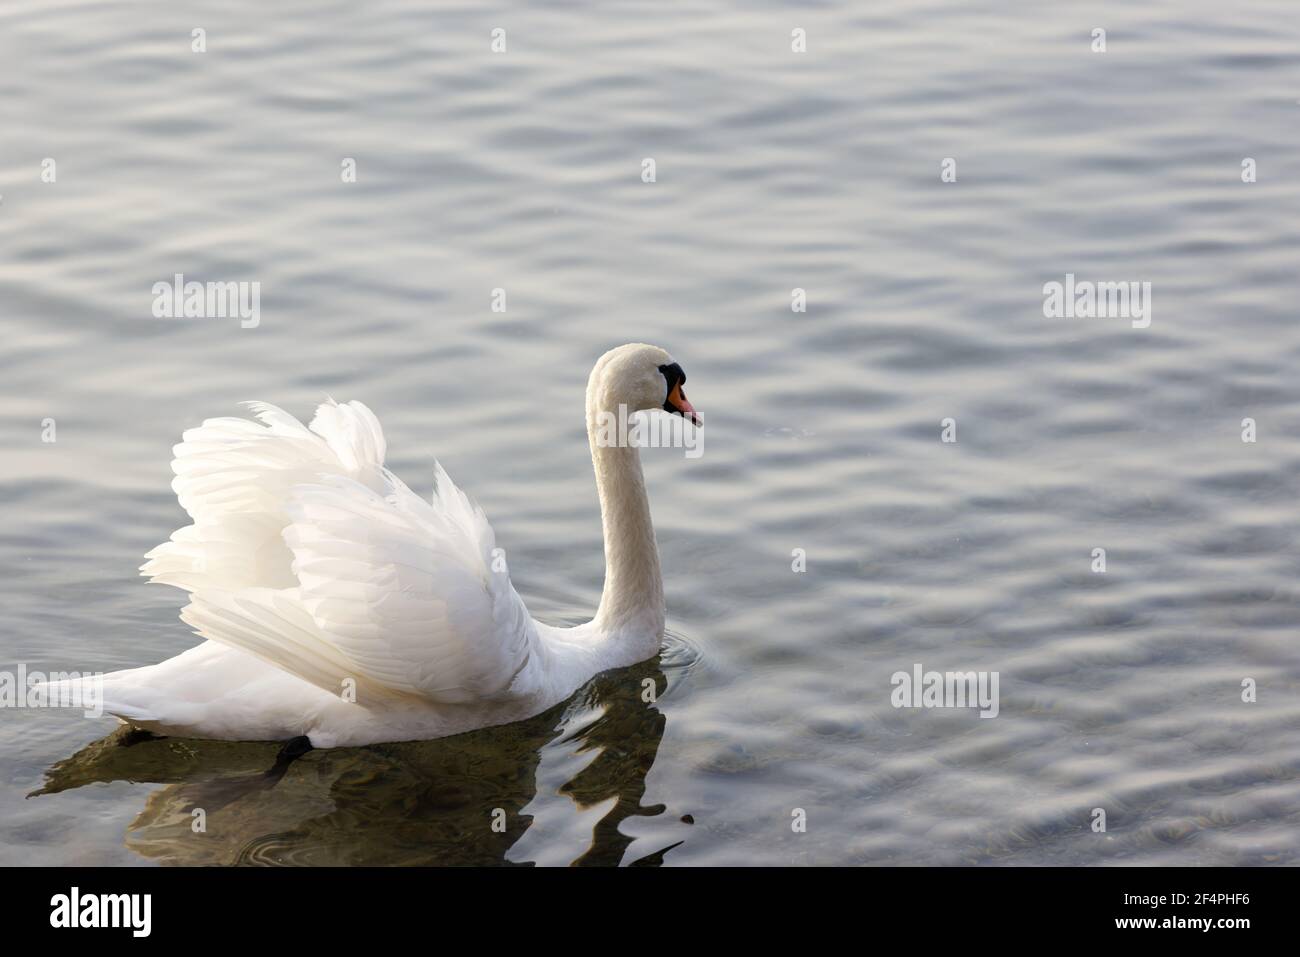 cygne blanc avec un geste menaçant nage sur le lac, les ailes s'ouvrent pour signaler aux gens et aux autres animaux de garder la distance de lui et de son nid, par jour Banque D'Images